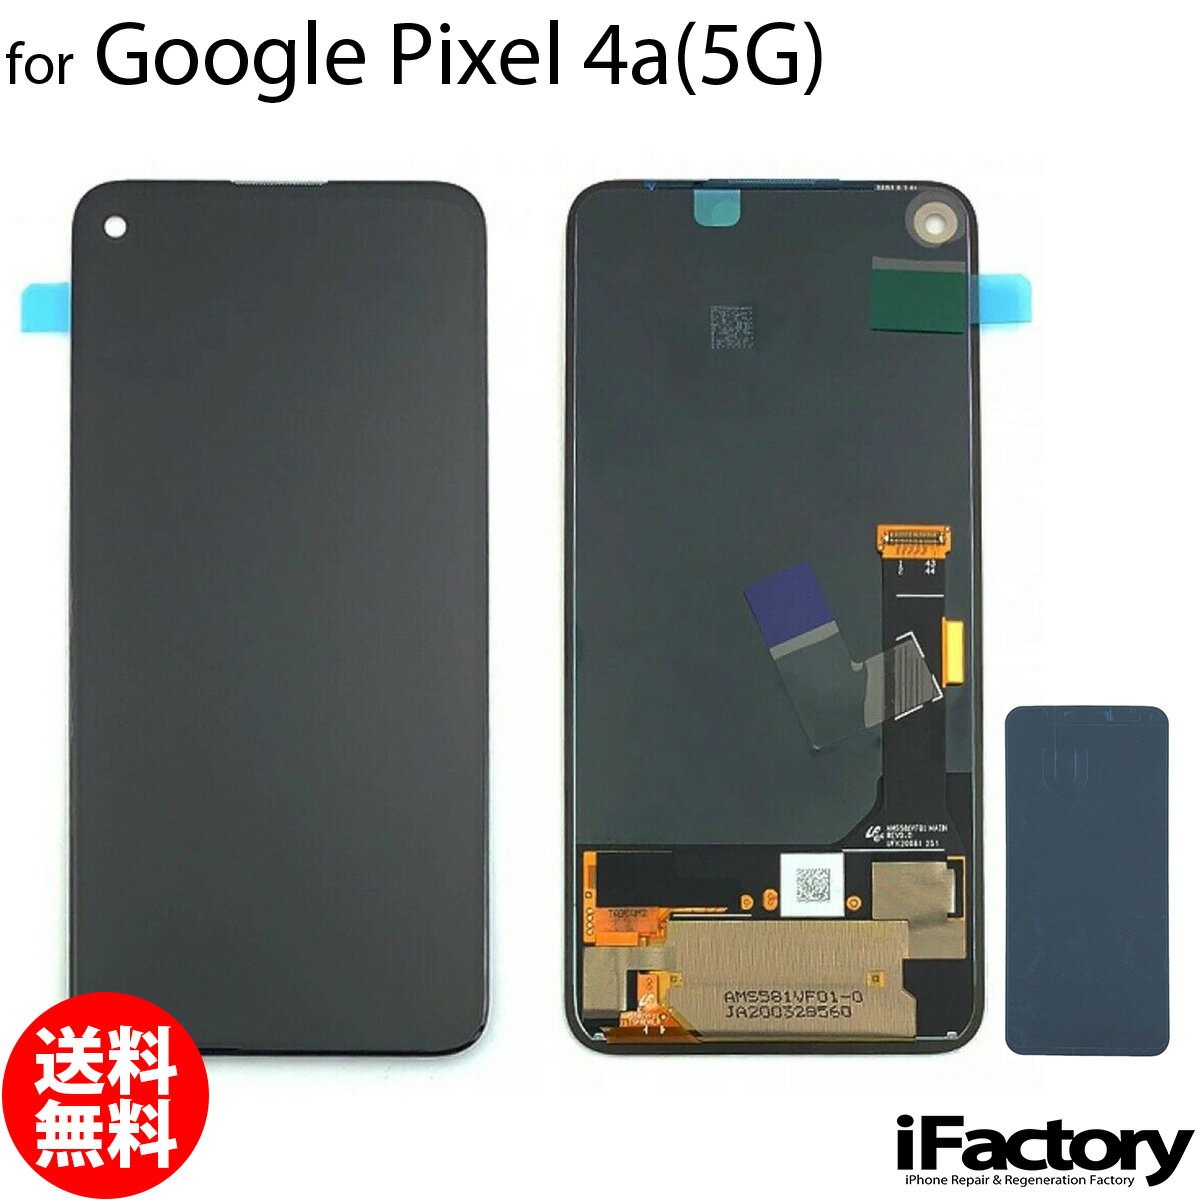 Google Pixel 4a 5G 互換 液晶パネル タッチパネル OLED